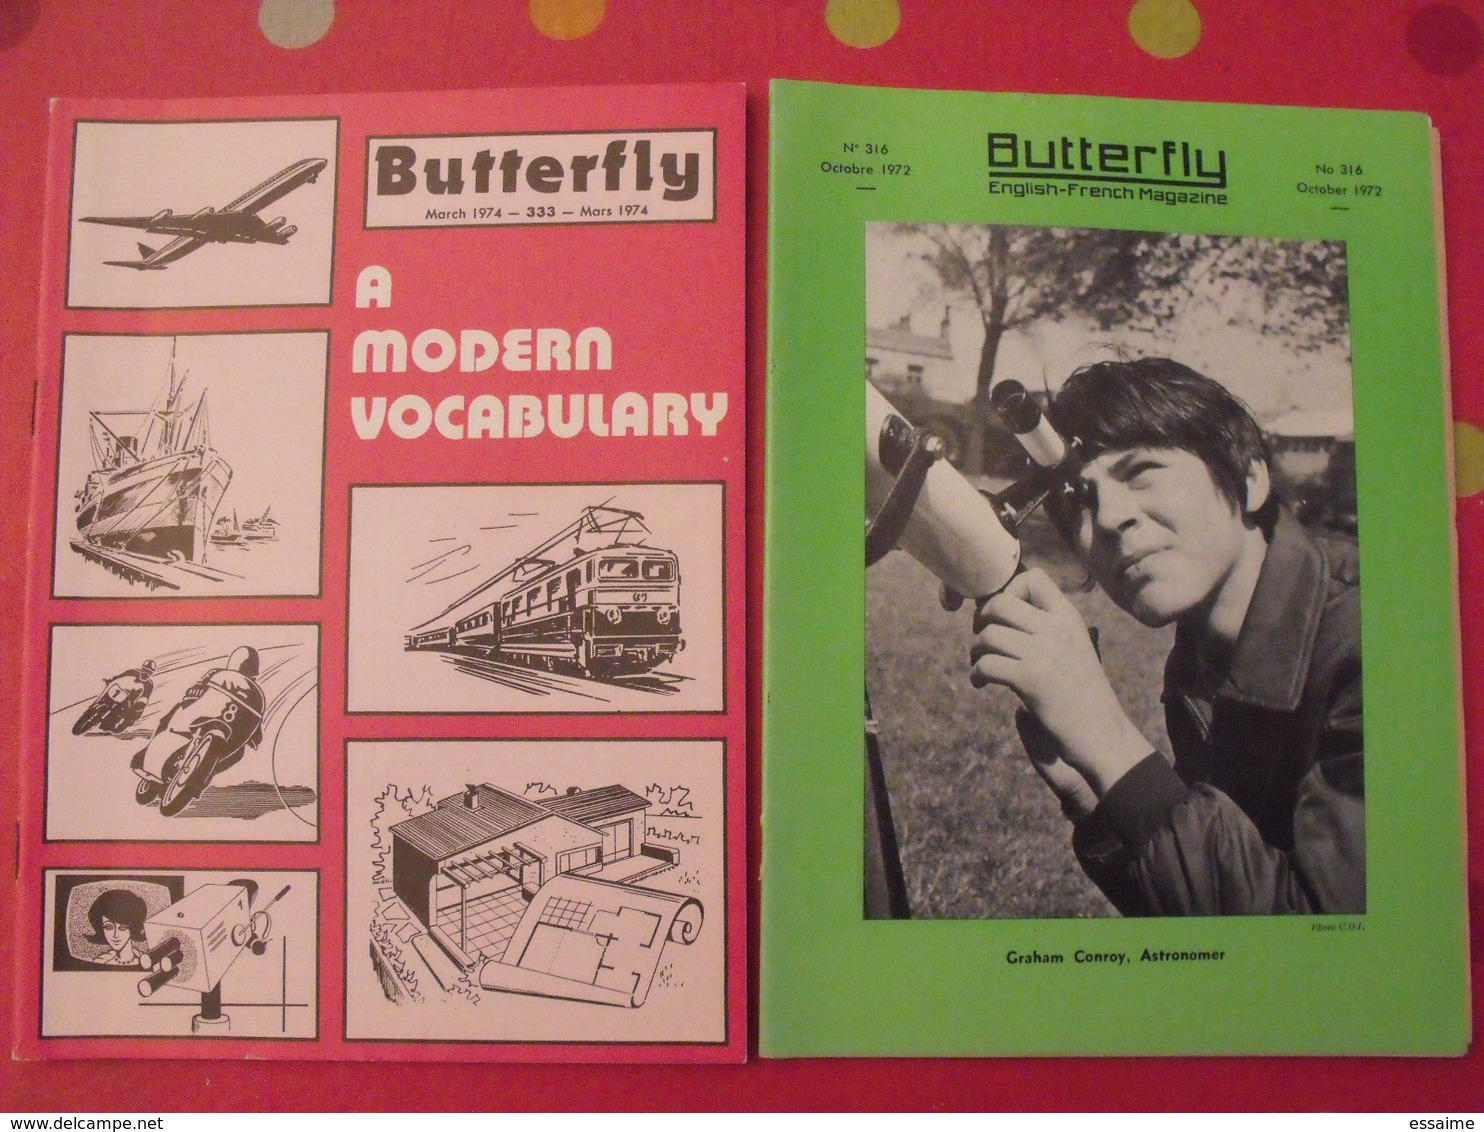 16 revues butterfly, English-French Magazine. revue pédagogique1962-1974